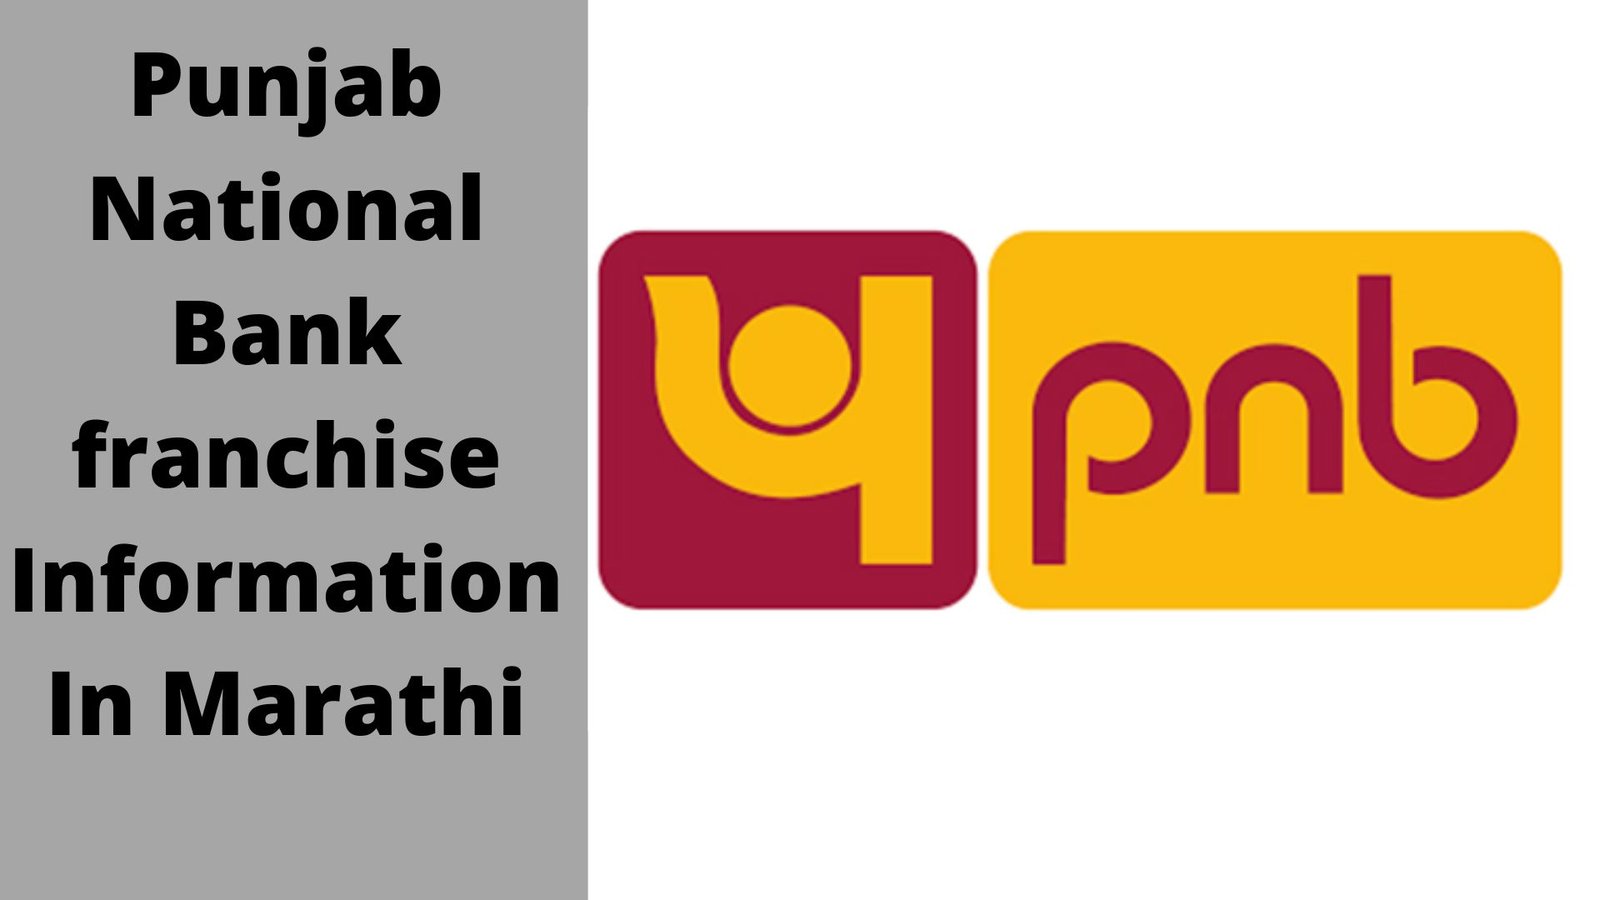 बँकिंग फ्रँचायझी सुरू करण्यासाठी प्रक्रिया पूर्ण करा | Punjab National Bank franchise Information In Marathi